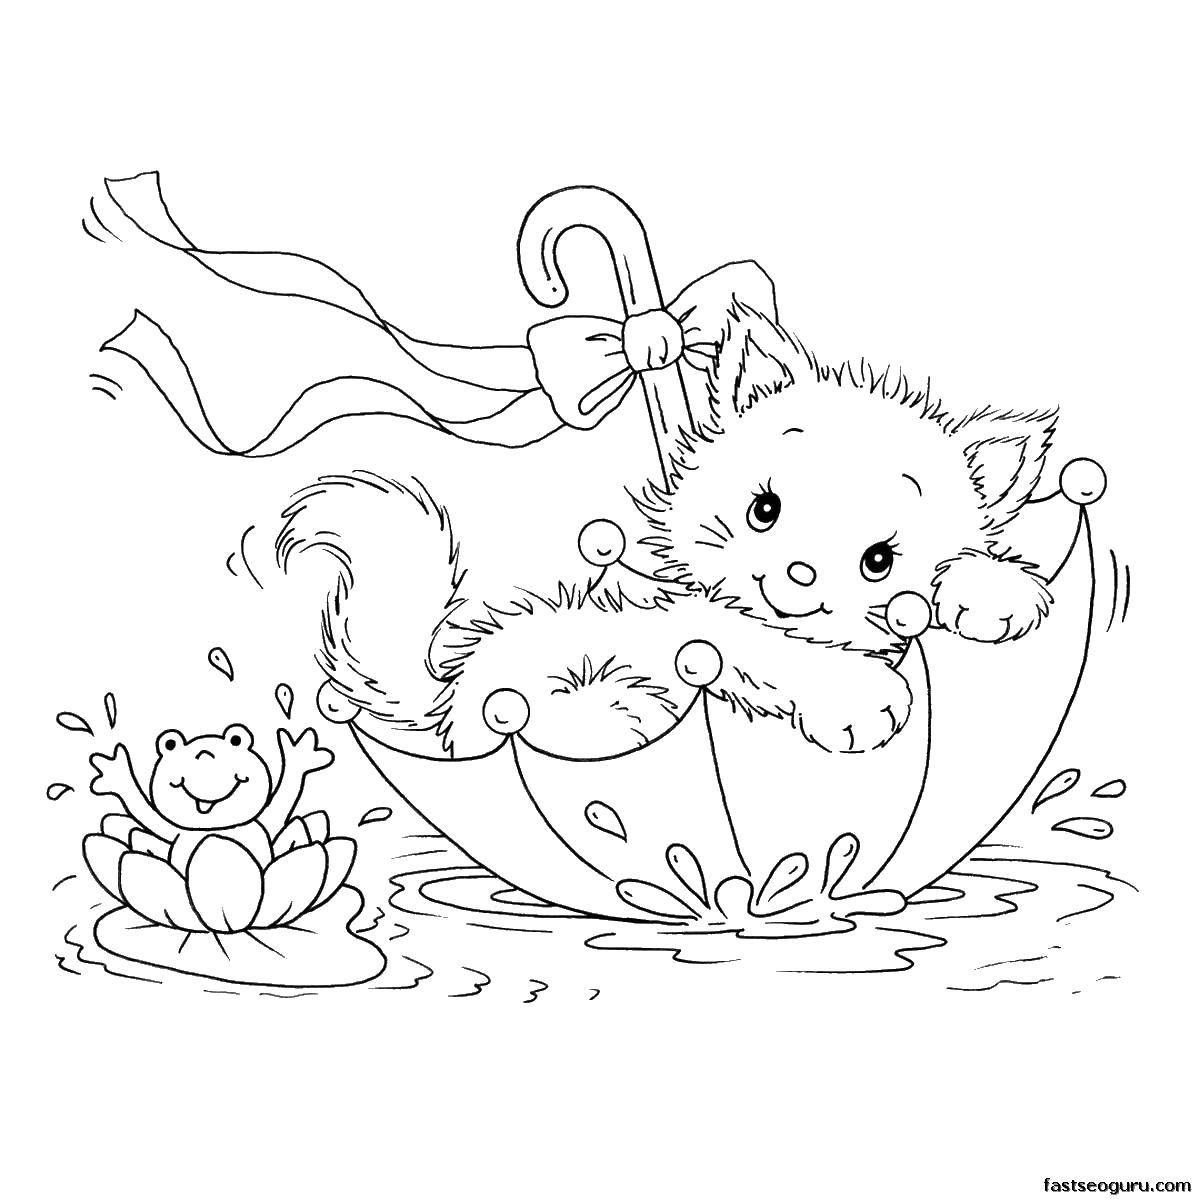 Название: Раскраска Кошечка в зонтике. Категория: Коты и котята. Теги: коты, котята, кошки, зонт.